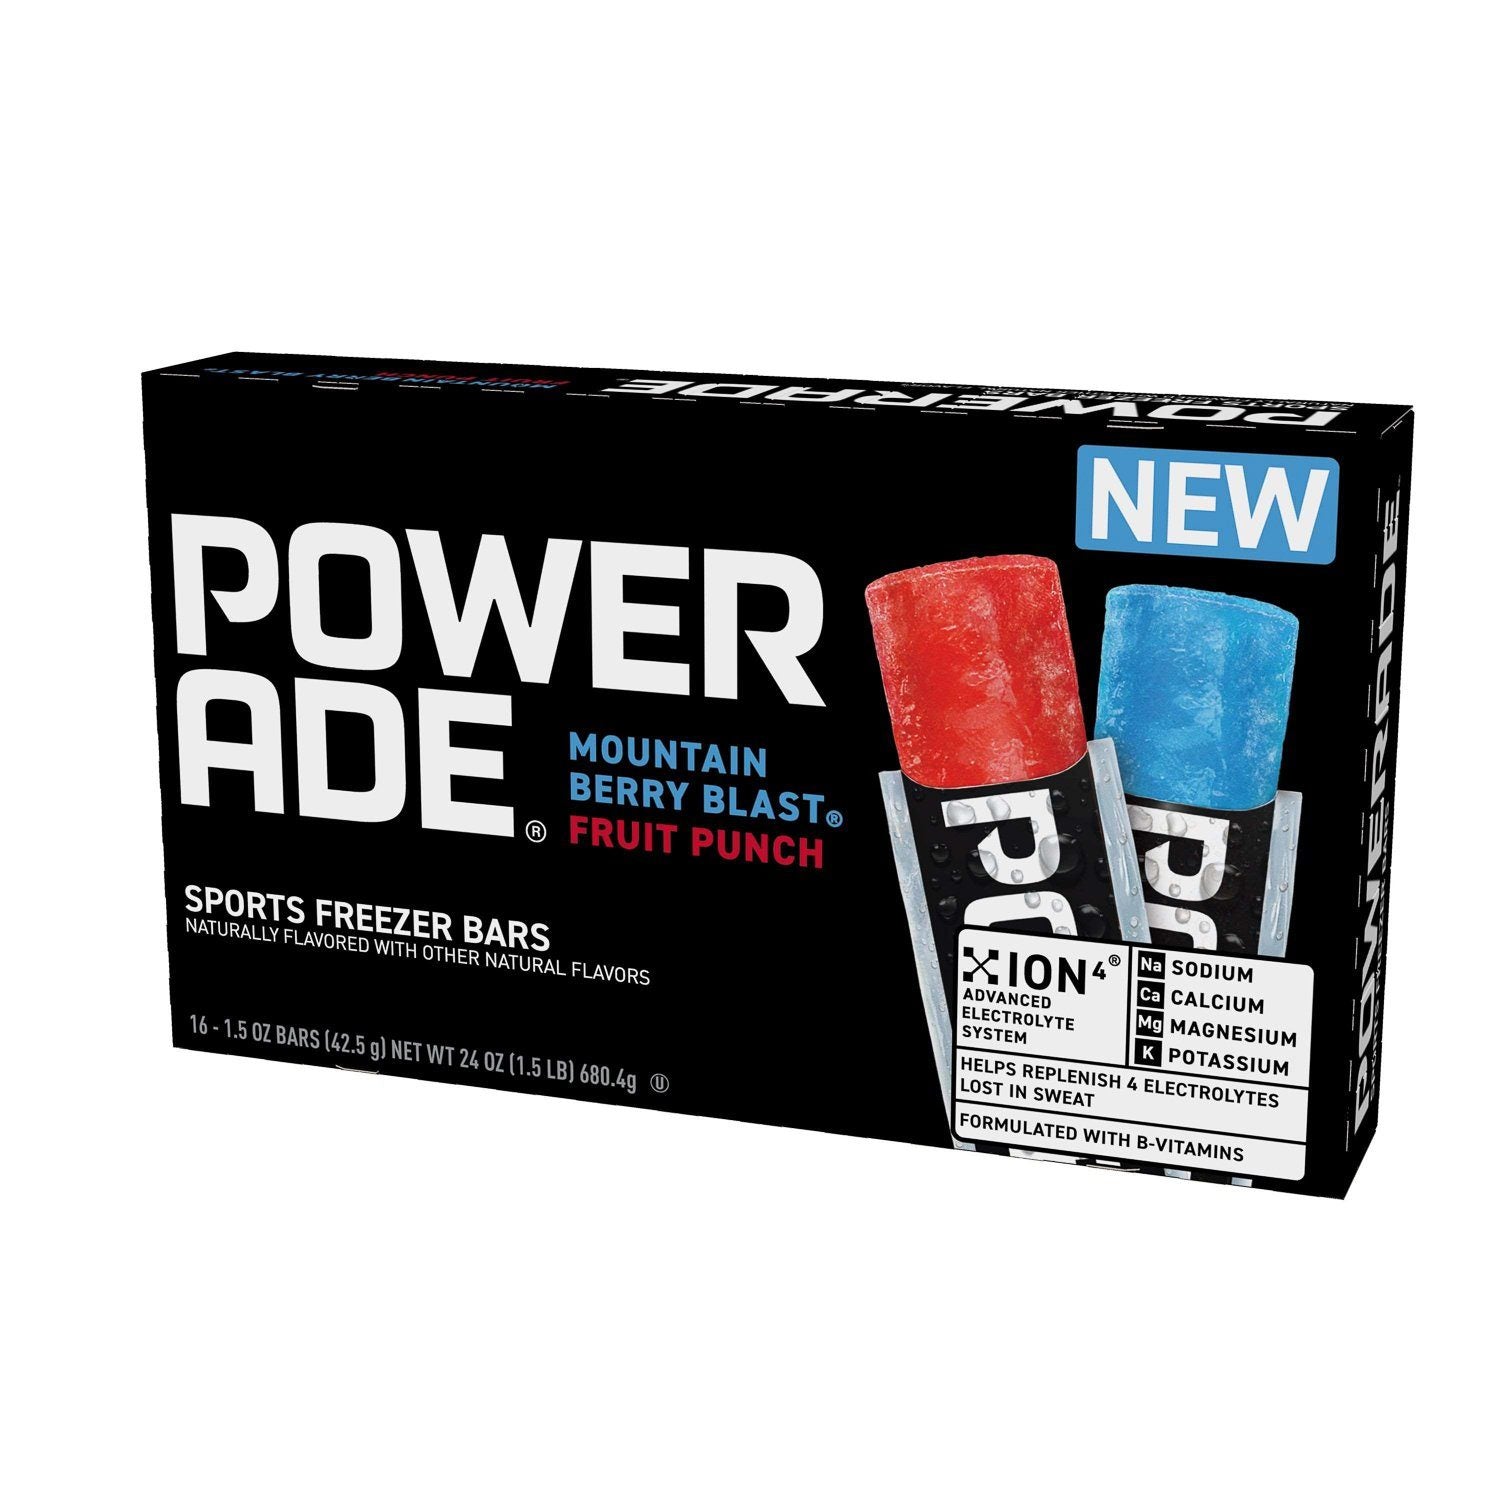 Powerade Sport Freezer Bars Powerade Original 1.5 Oz-16 Count 